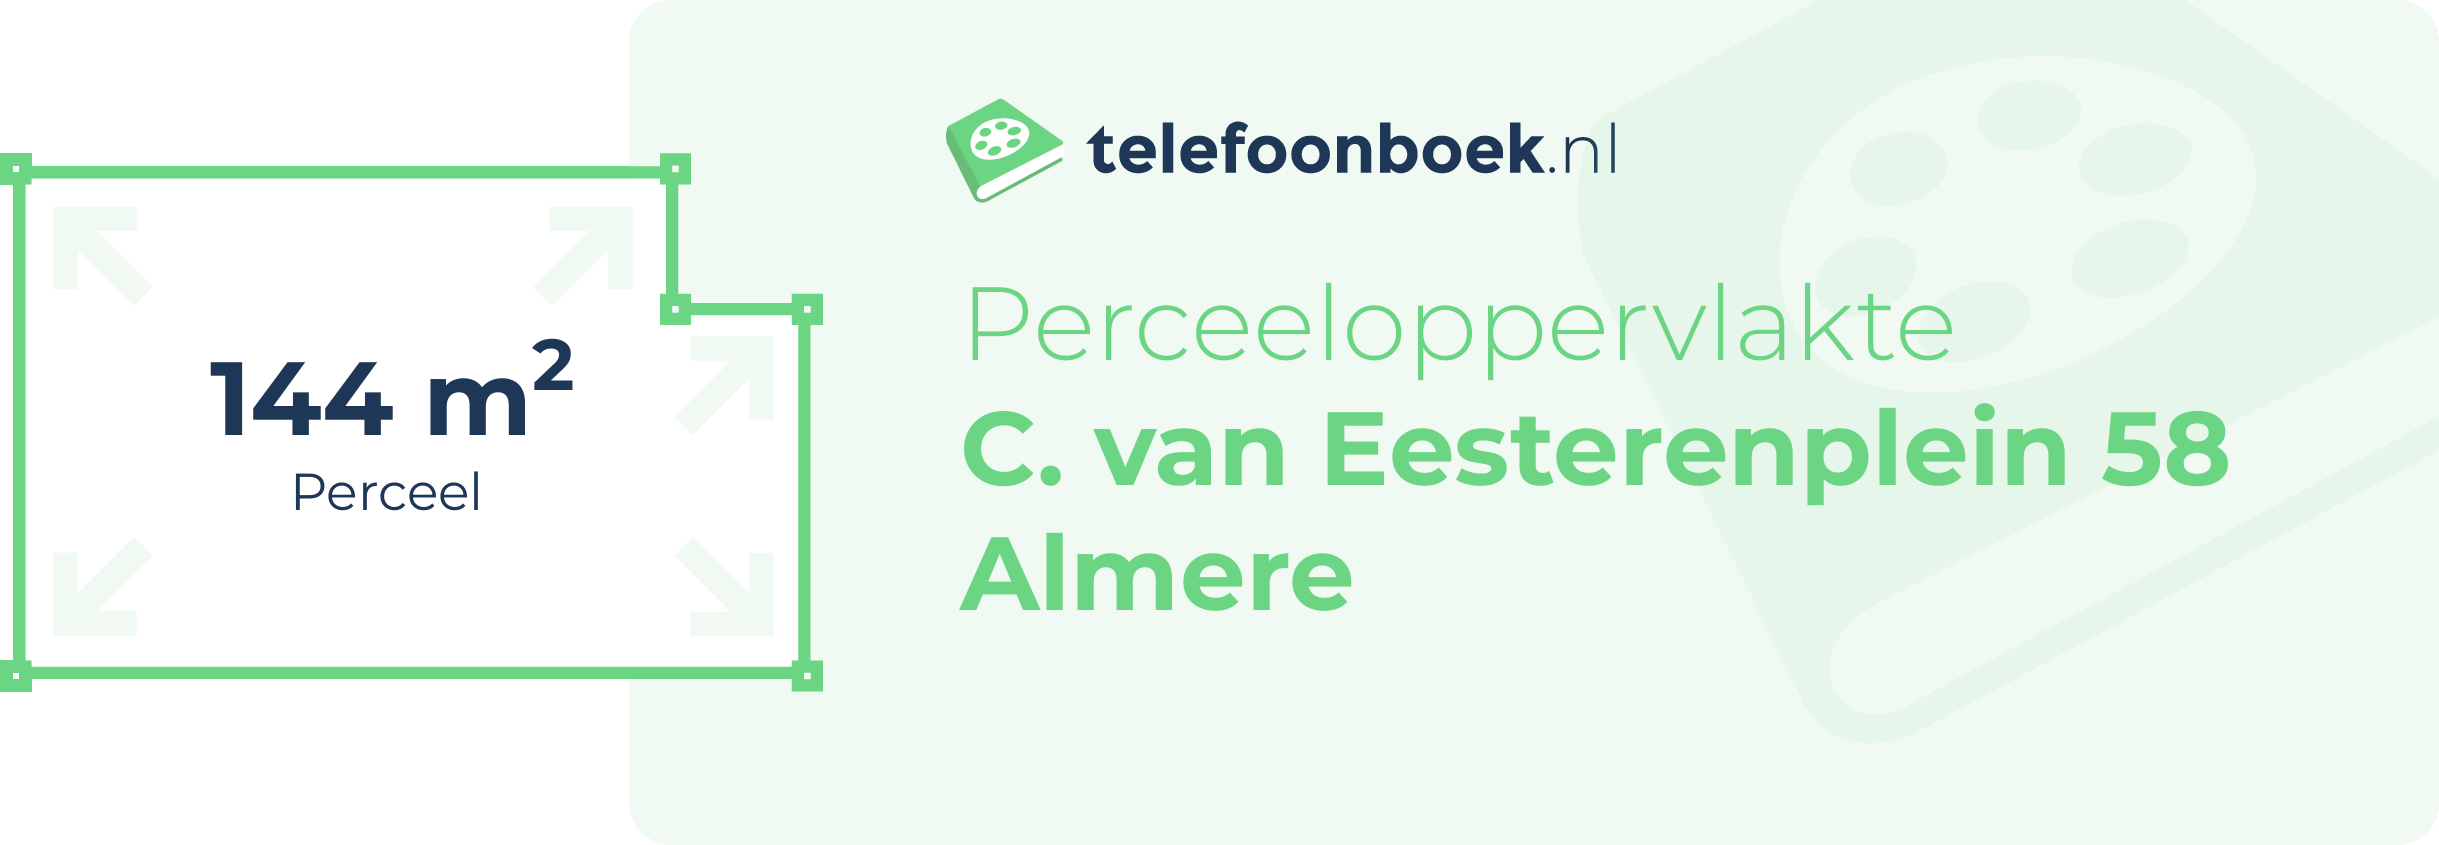 Perceeloppervlakte C. Van Eesterenplein 58 Almere